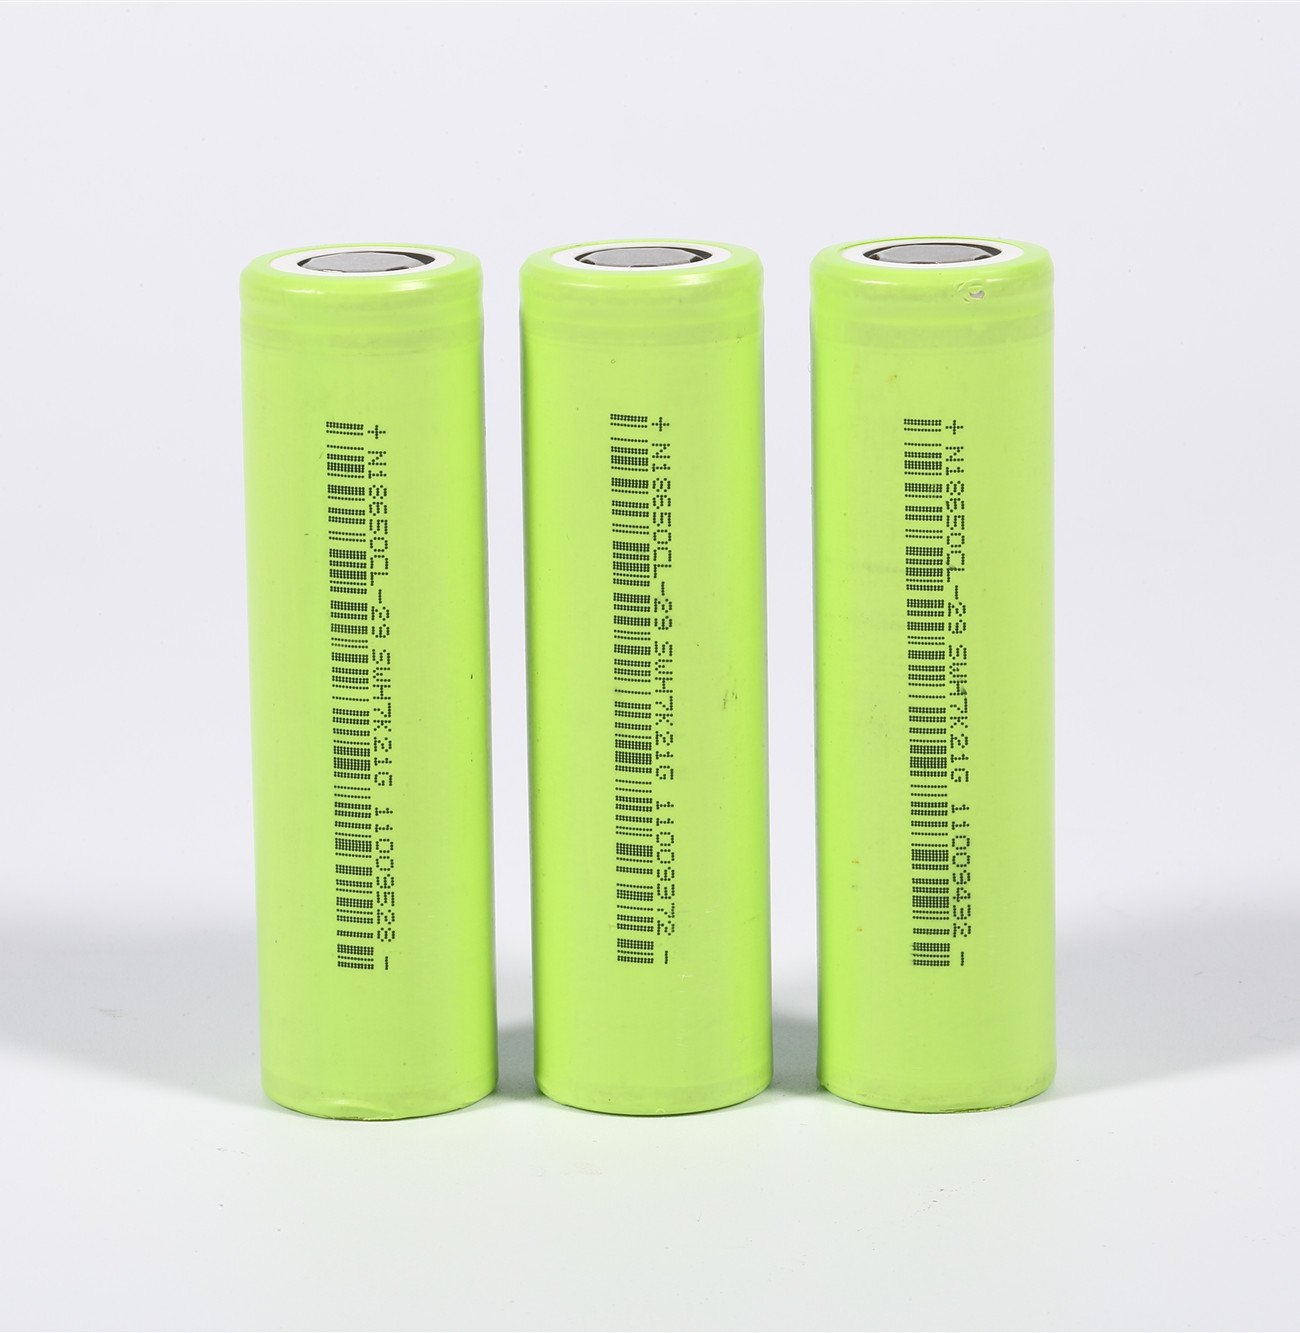 2900mah green 18650 batteries for laptops